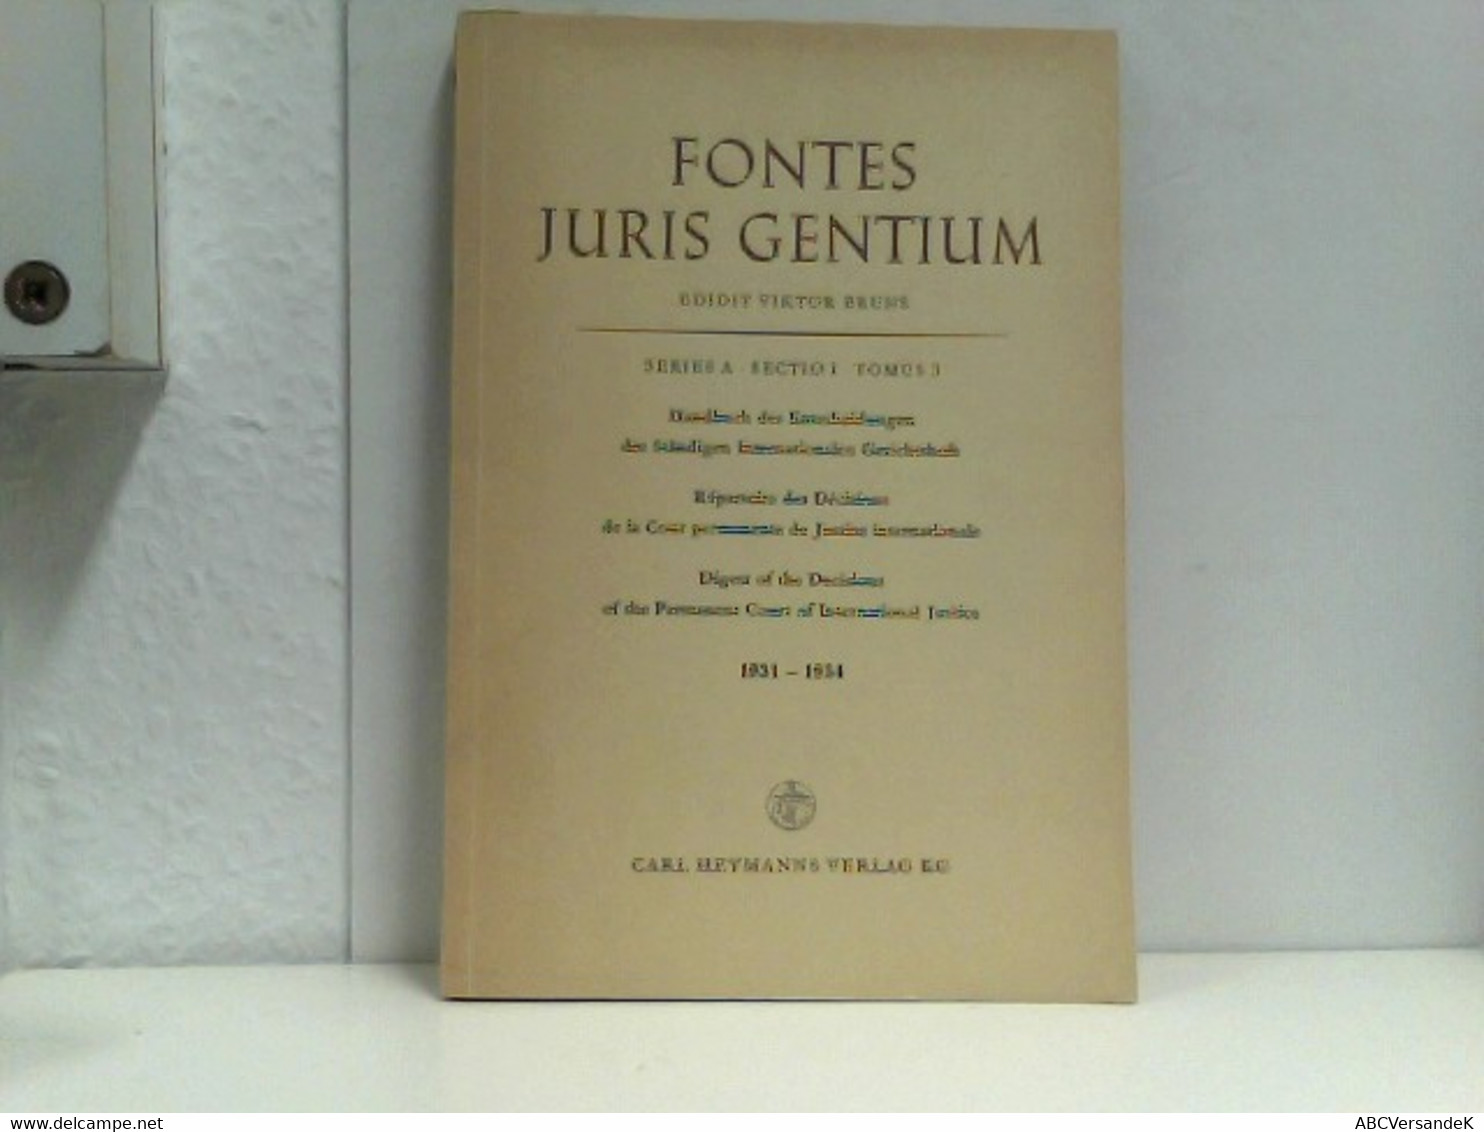 Fontes Juris Gentium Series A Sectio I Tomus 3 Handbuch Der Entscheidungen Des Ständigen Internationalen Geric - Rechten